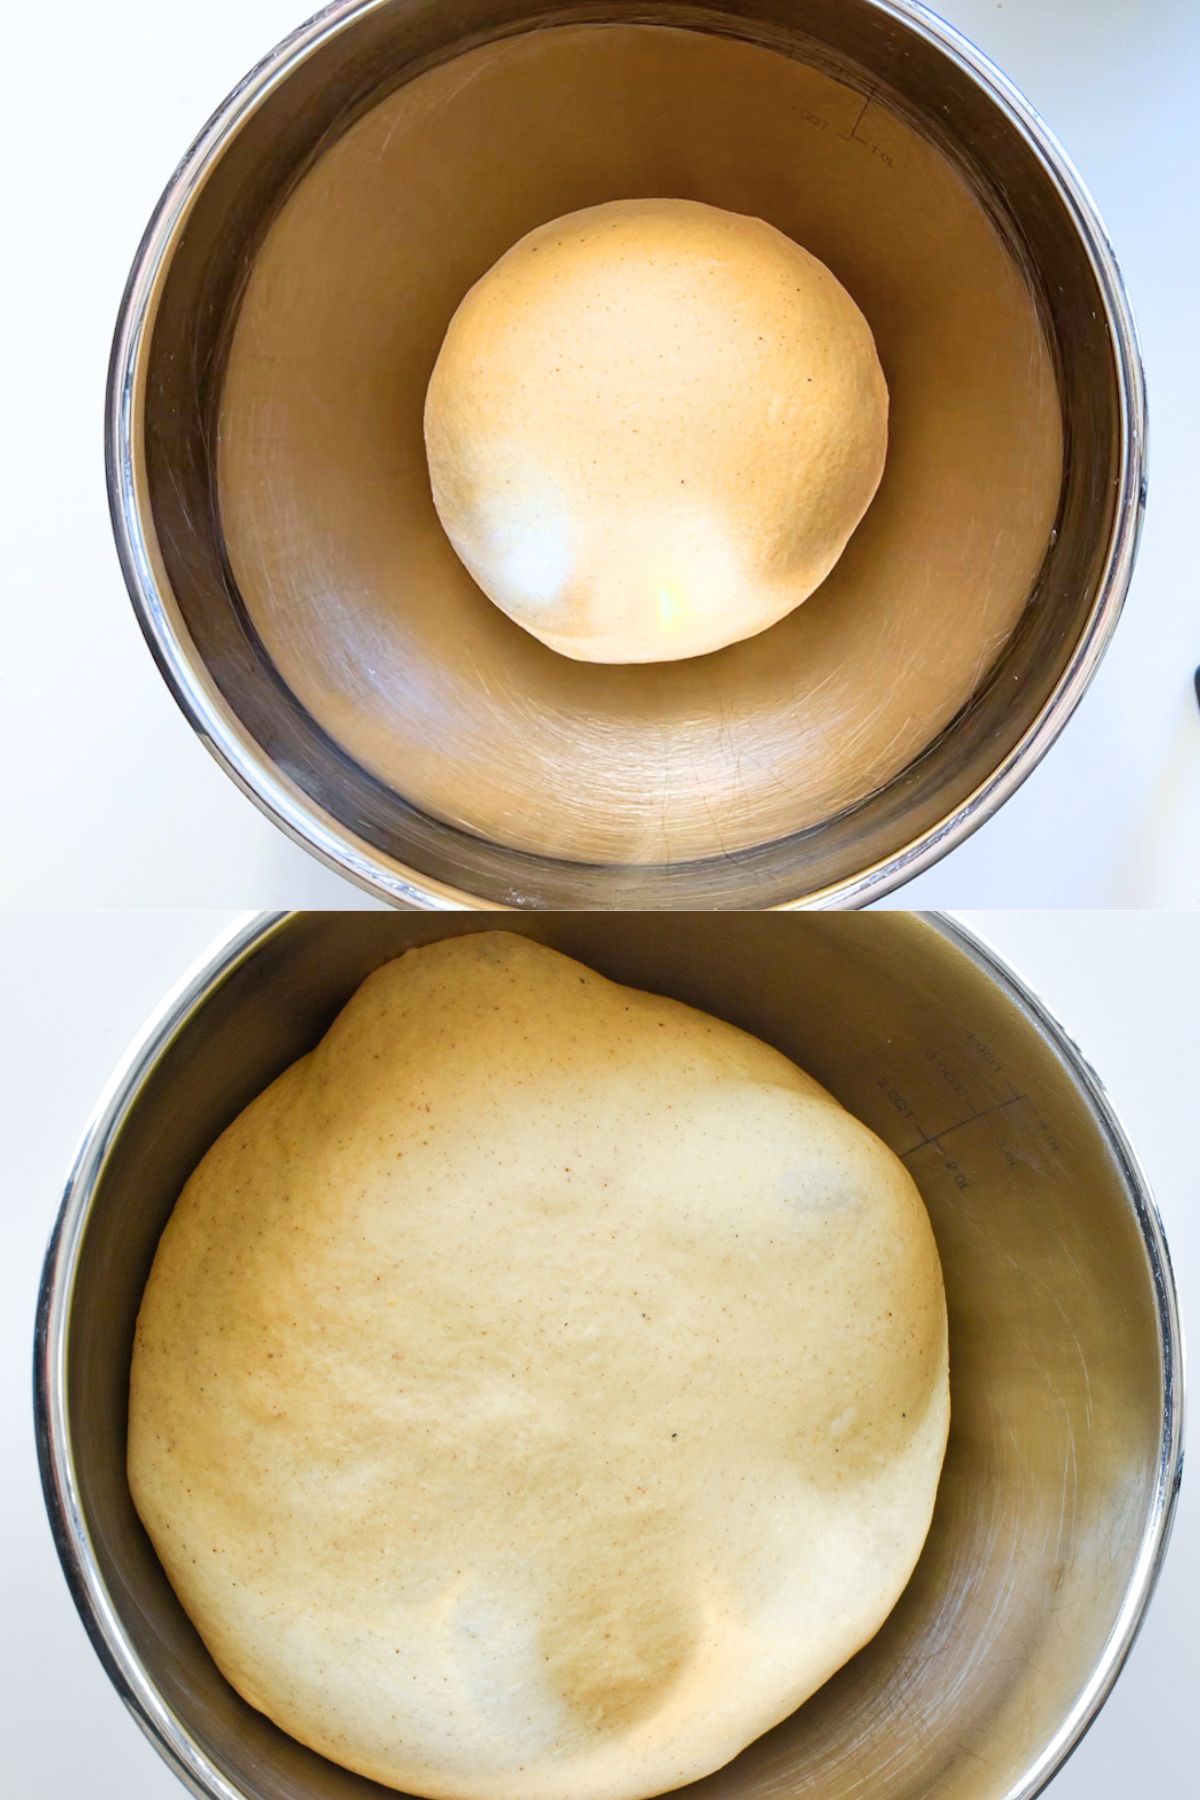 Risen pumpkin bagel dough in a stainless steel bowl.